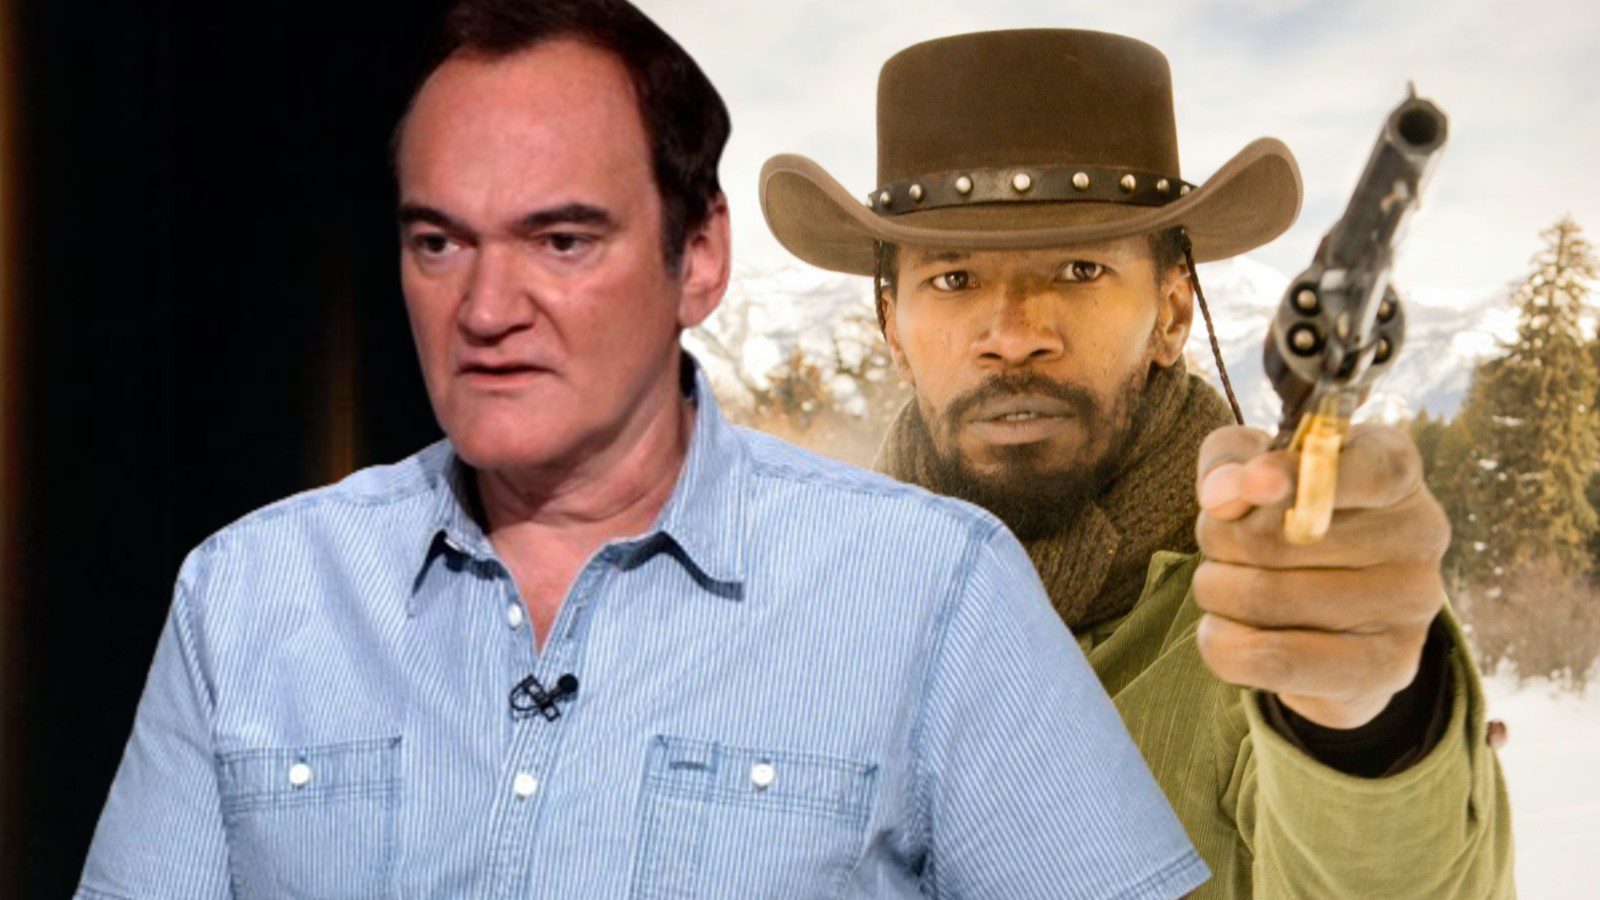 Quentin Tarantino, N-kelime ve şiddet tepkisine yanıt veriyor: “Başka bir şey gör”